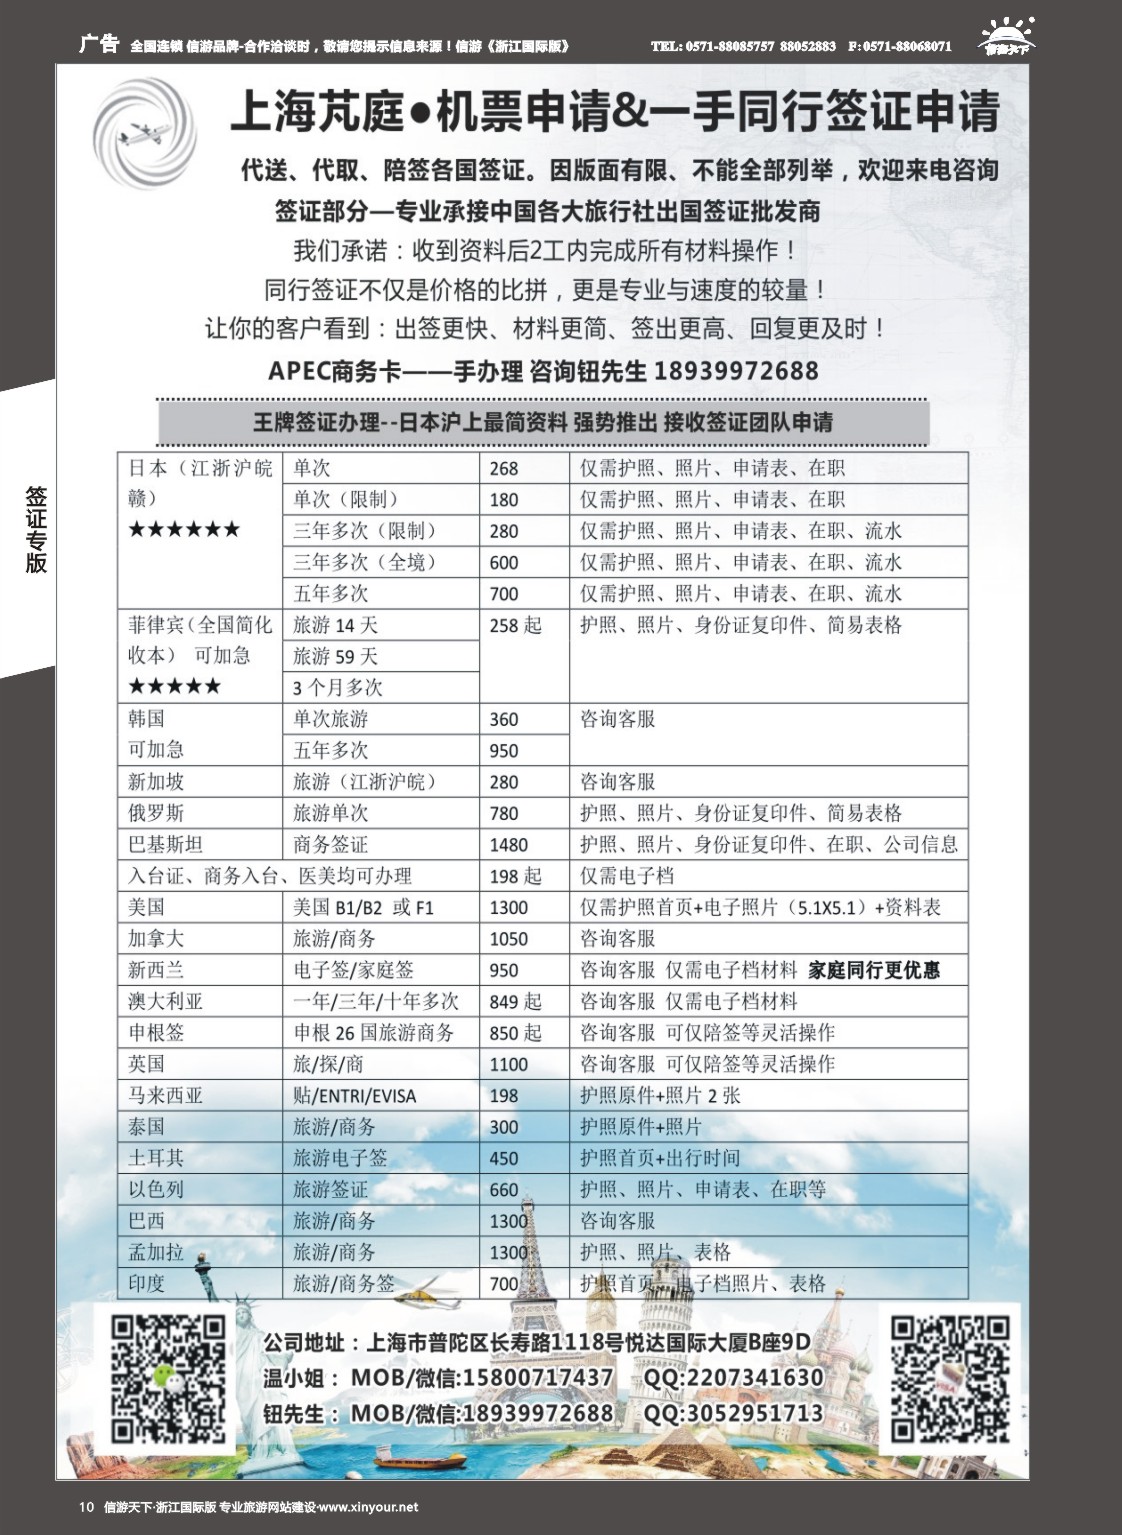 10上海芃庭-中国各大旅行社签证批发商